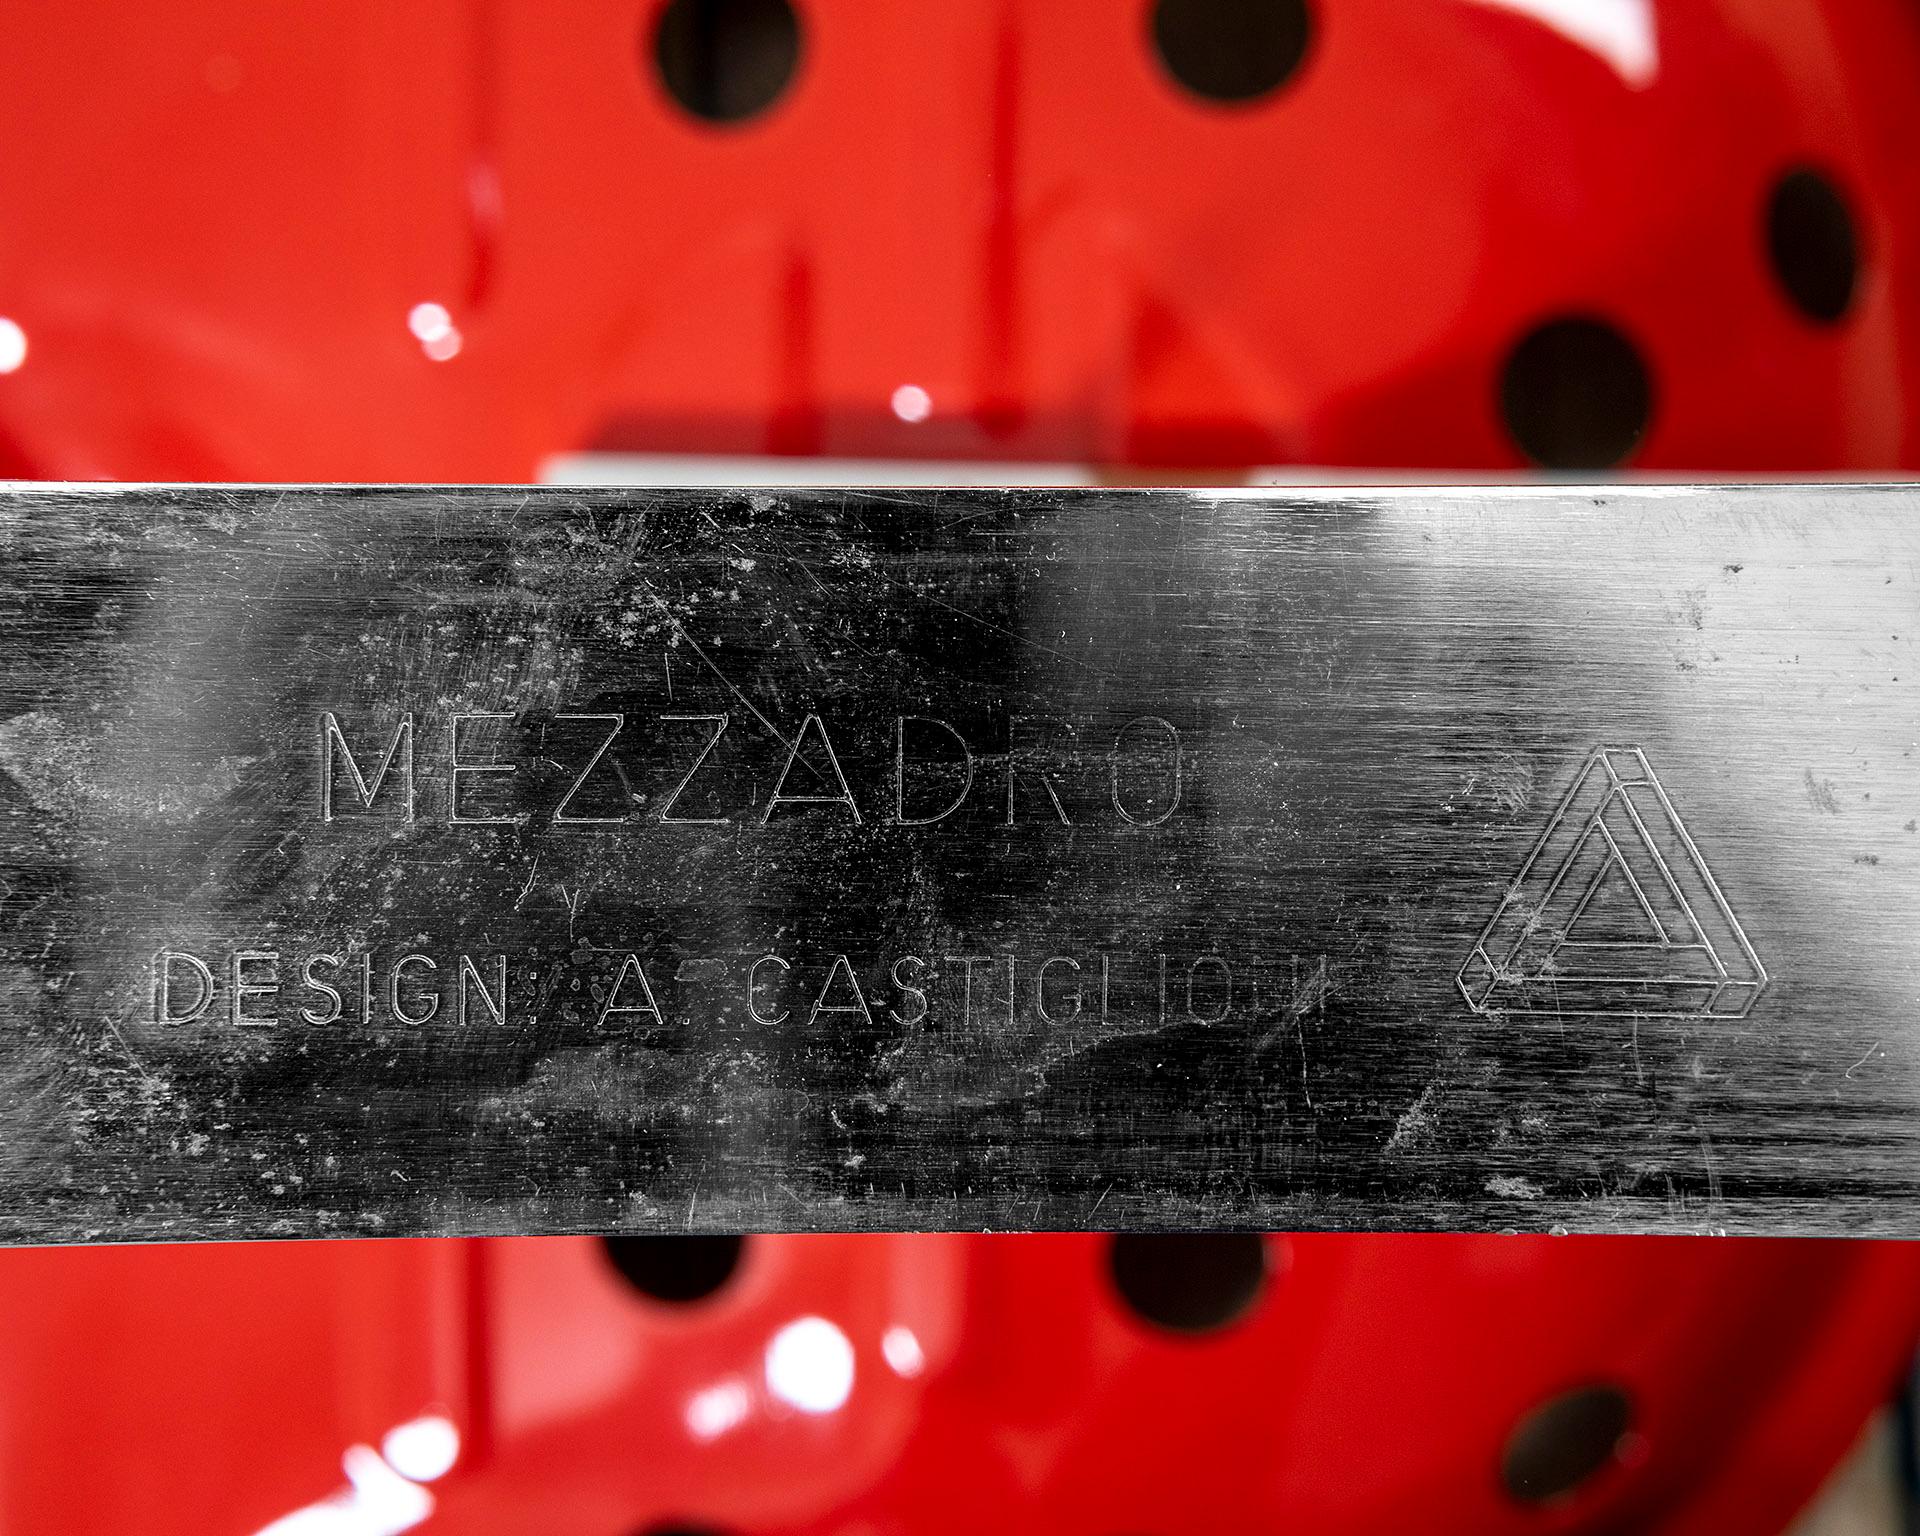 Metal 20th Century Achille and Pier Giacomo Castiglioni Pair of Stools Mod. Mezzadro For Sale